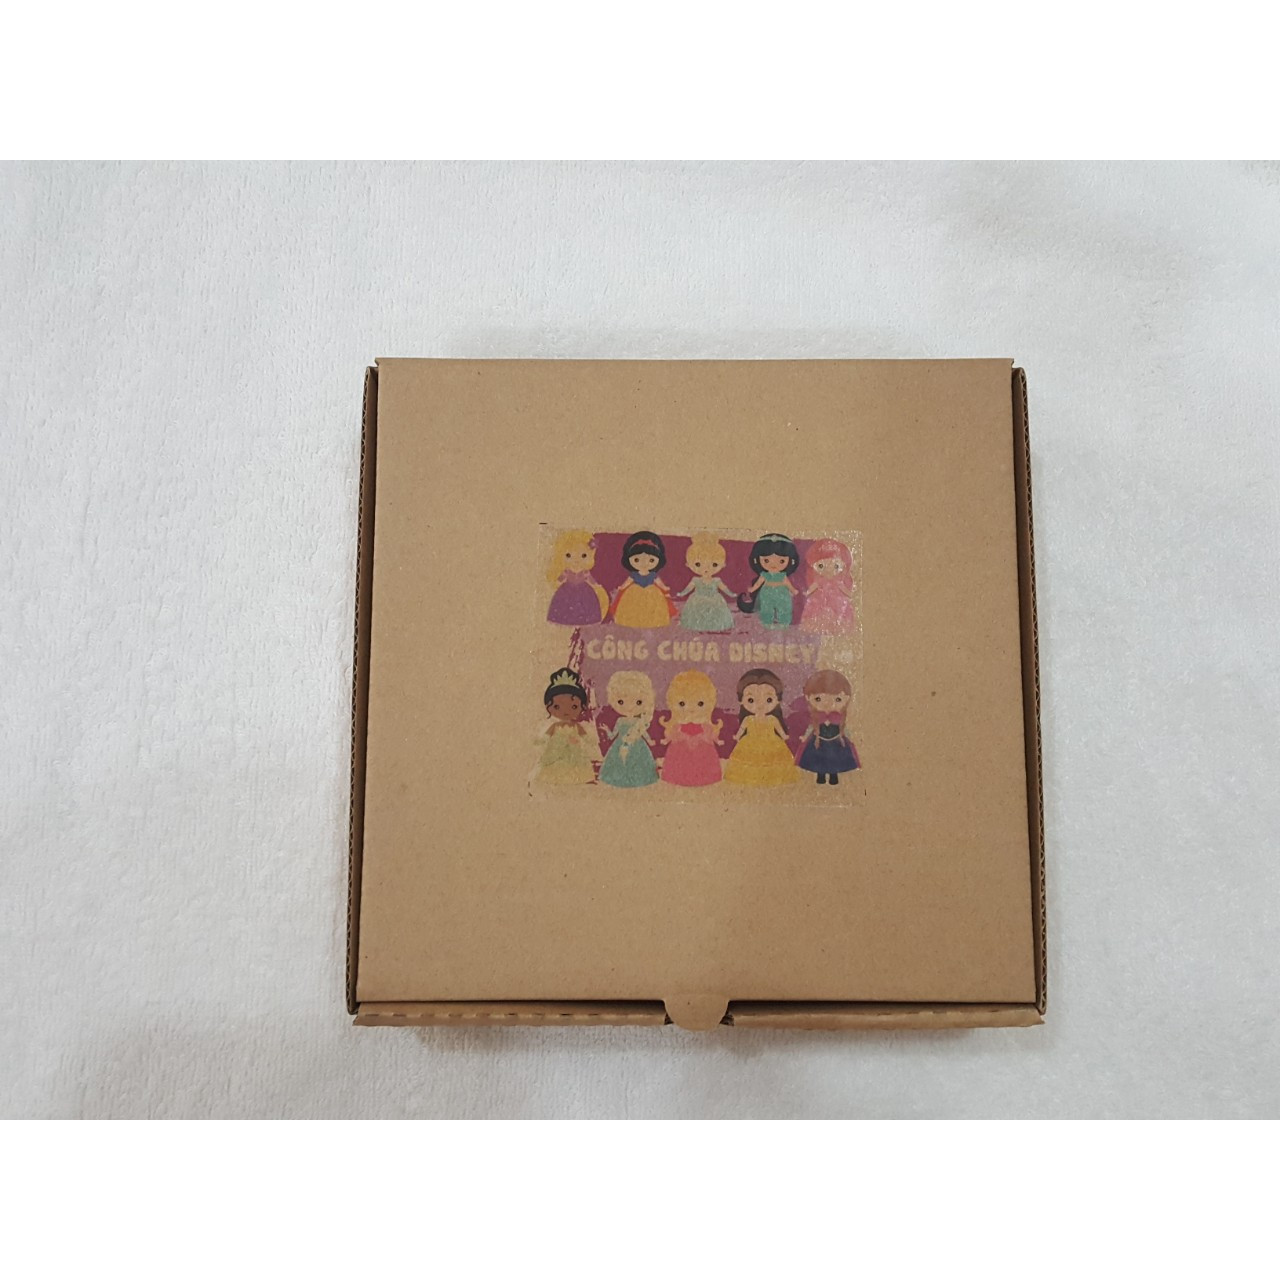 Đồ chơi tô màu 10 công chúa disney bằng gỗ, quà tặng cho bé gái từ 3 tuổi